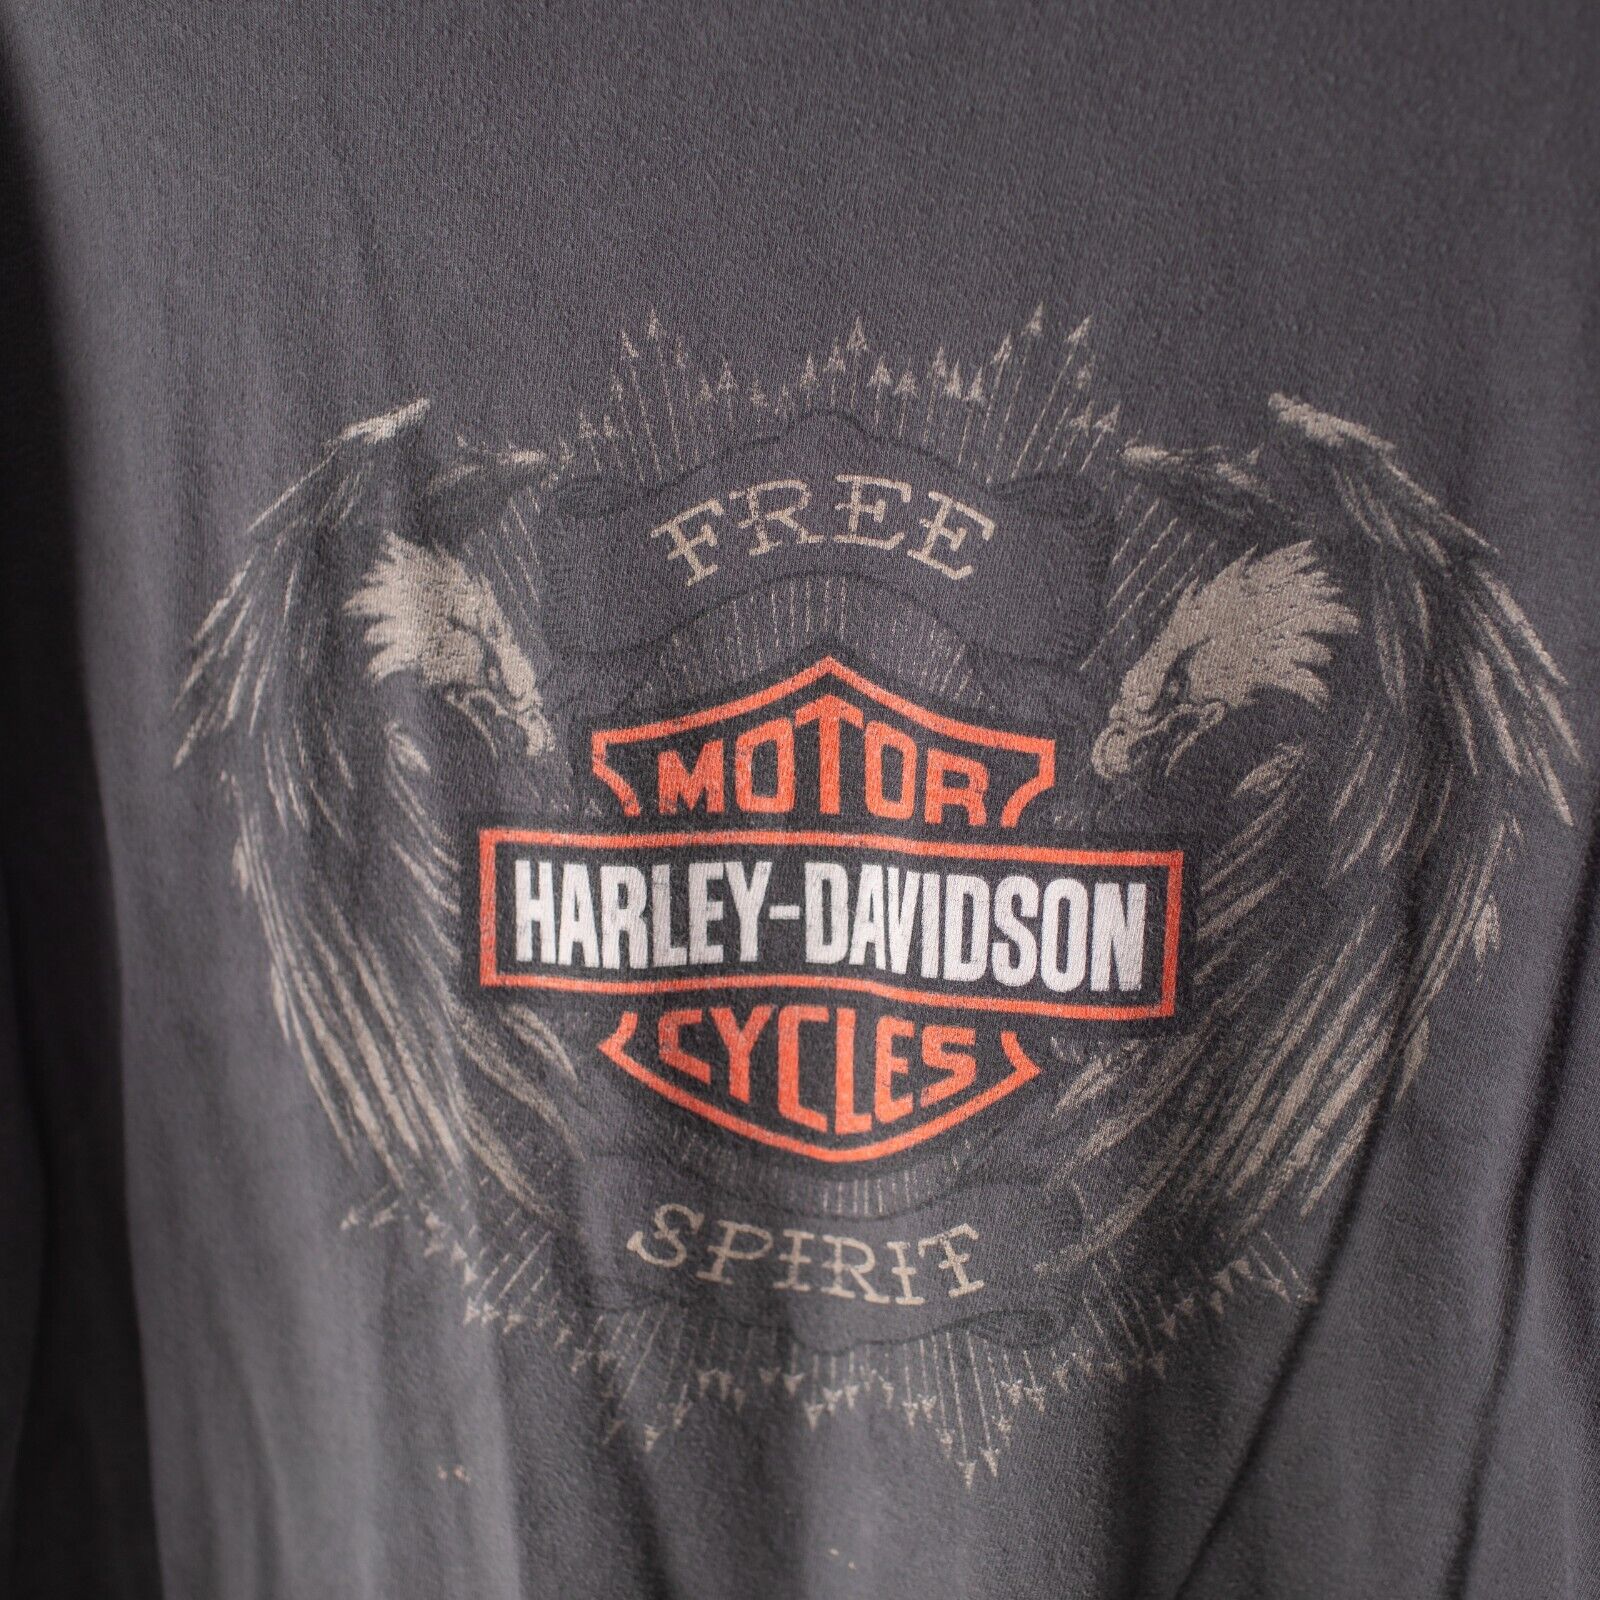 Harley Davidson Motorcycles Free Spirit Seattle Washington T-Shirt Size XL